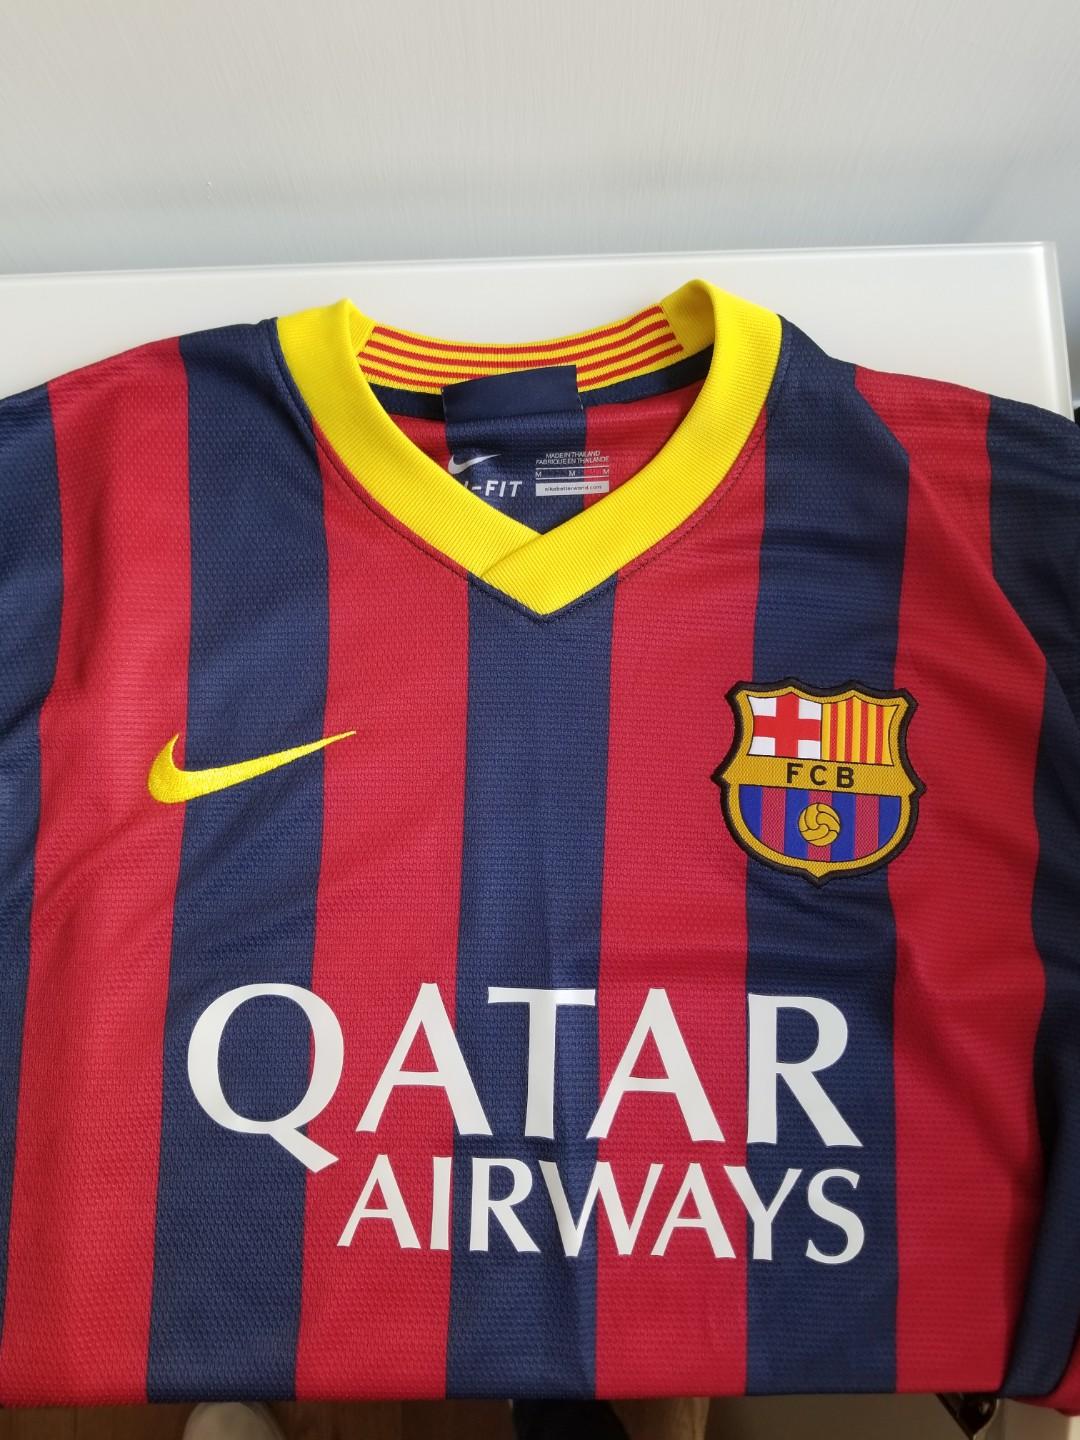 barcelona qatar airways jersey